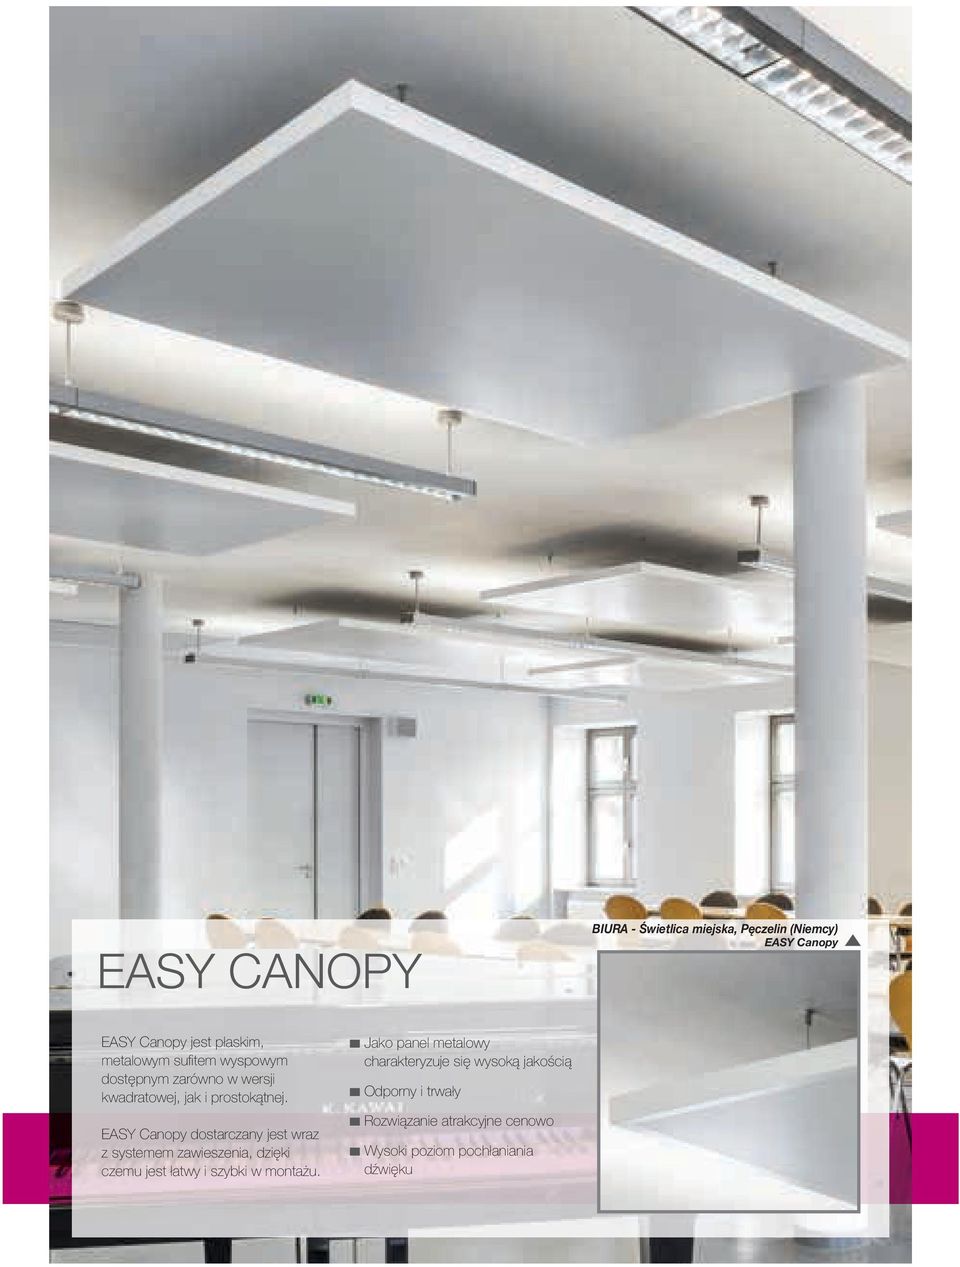 EASY Canopy dostarczany jest wraz z systemem zawieszenia, dzięki czemu jest łatwy i szybki w montażu.